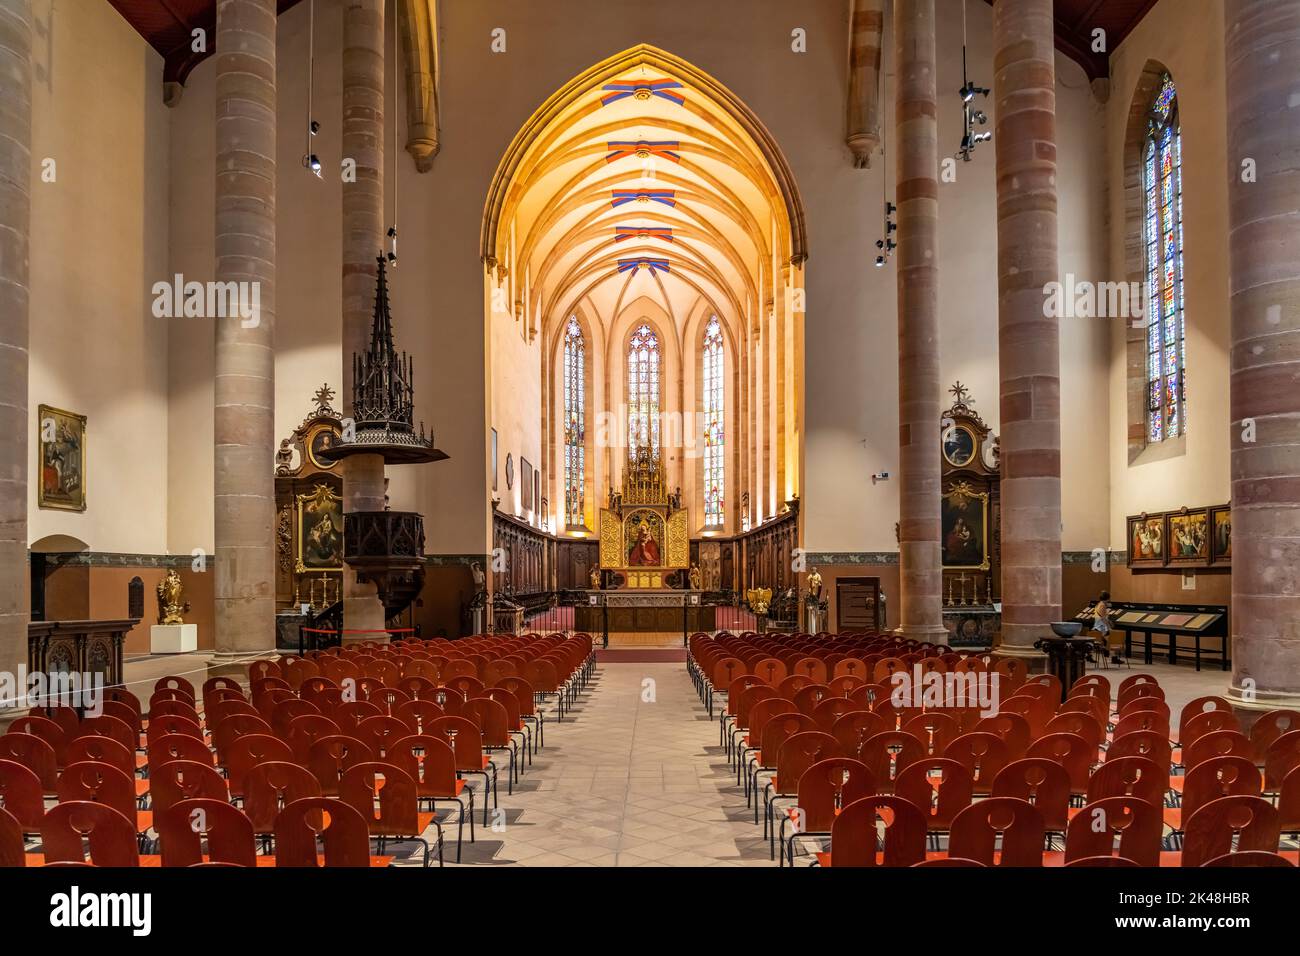 Innenraum der Dominikanerkirche en Colmar, Elsass, Frankreich | El interior de la Iglesia Dominicana en Colmar, Alsacia, Francia Foto de stock